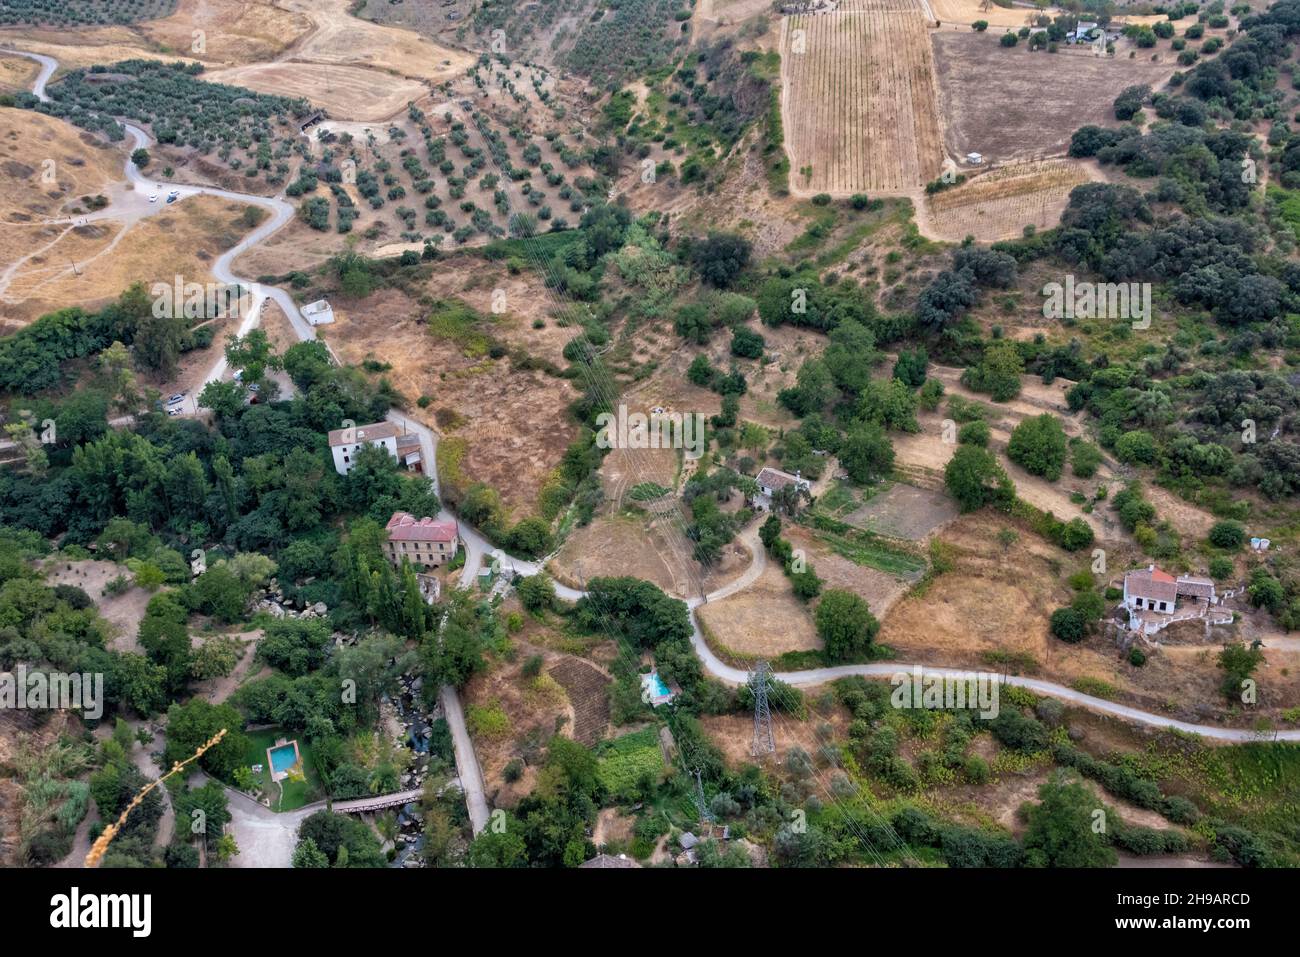 Olive farm in the mountain, Ronda, Malaga Province, Andalusia Autonomous Community, Spain Stock Photo